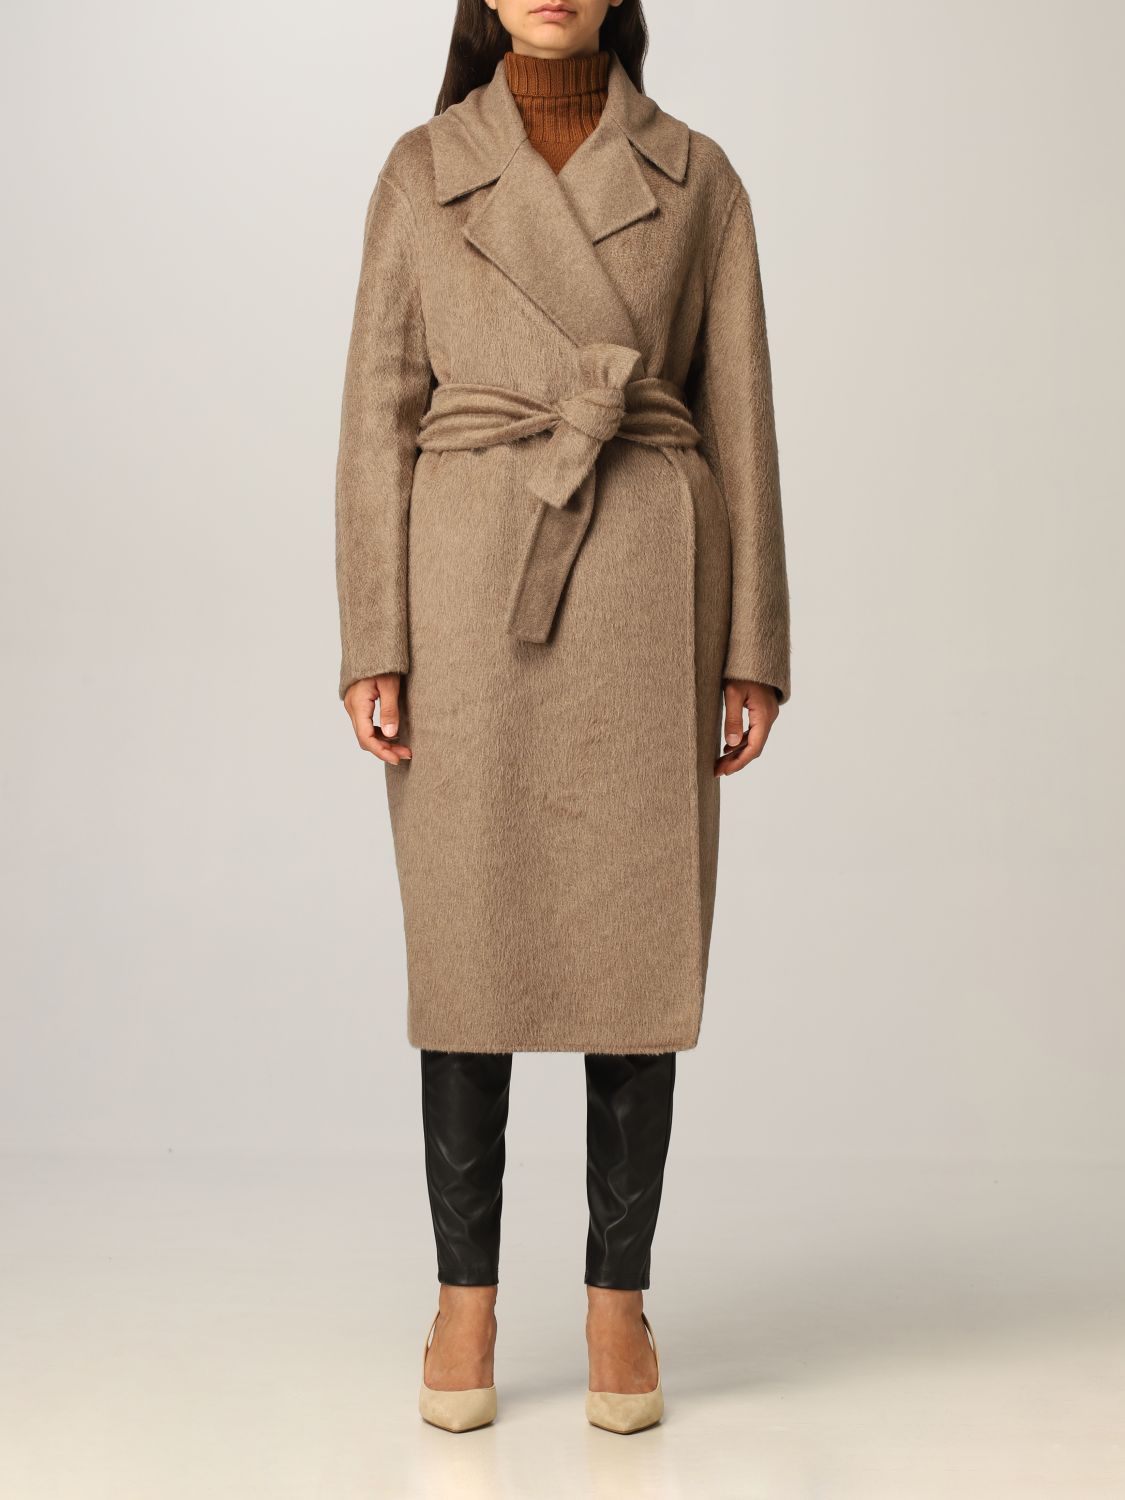 MAX MARA: cashmere coat | Coat Max Mara Women Dove Grey | Coat Max Mara ...